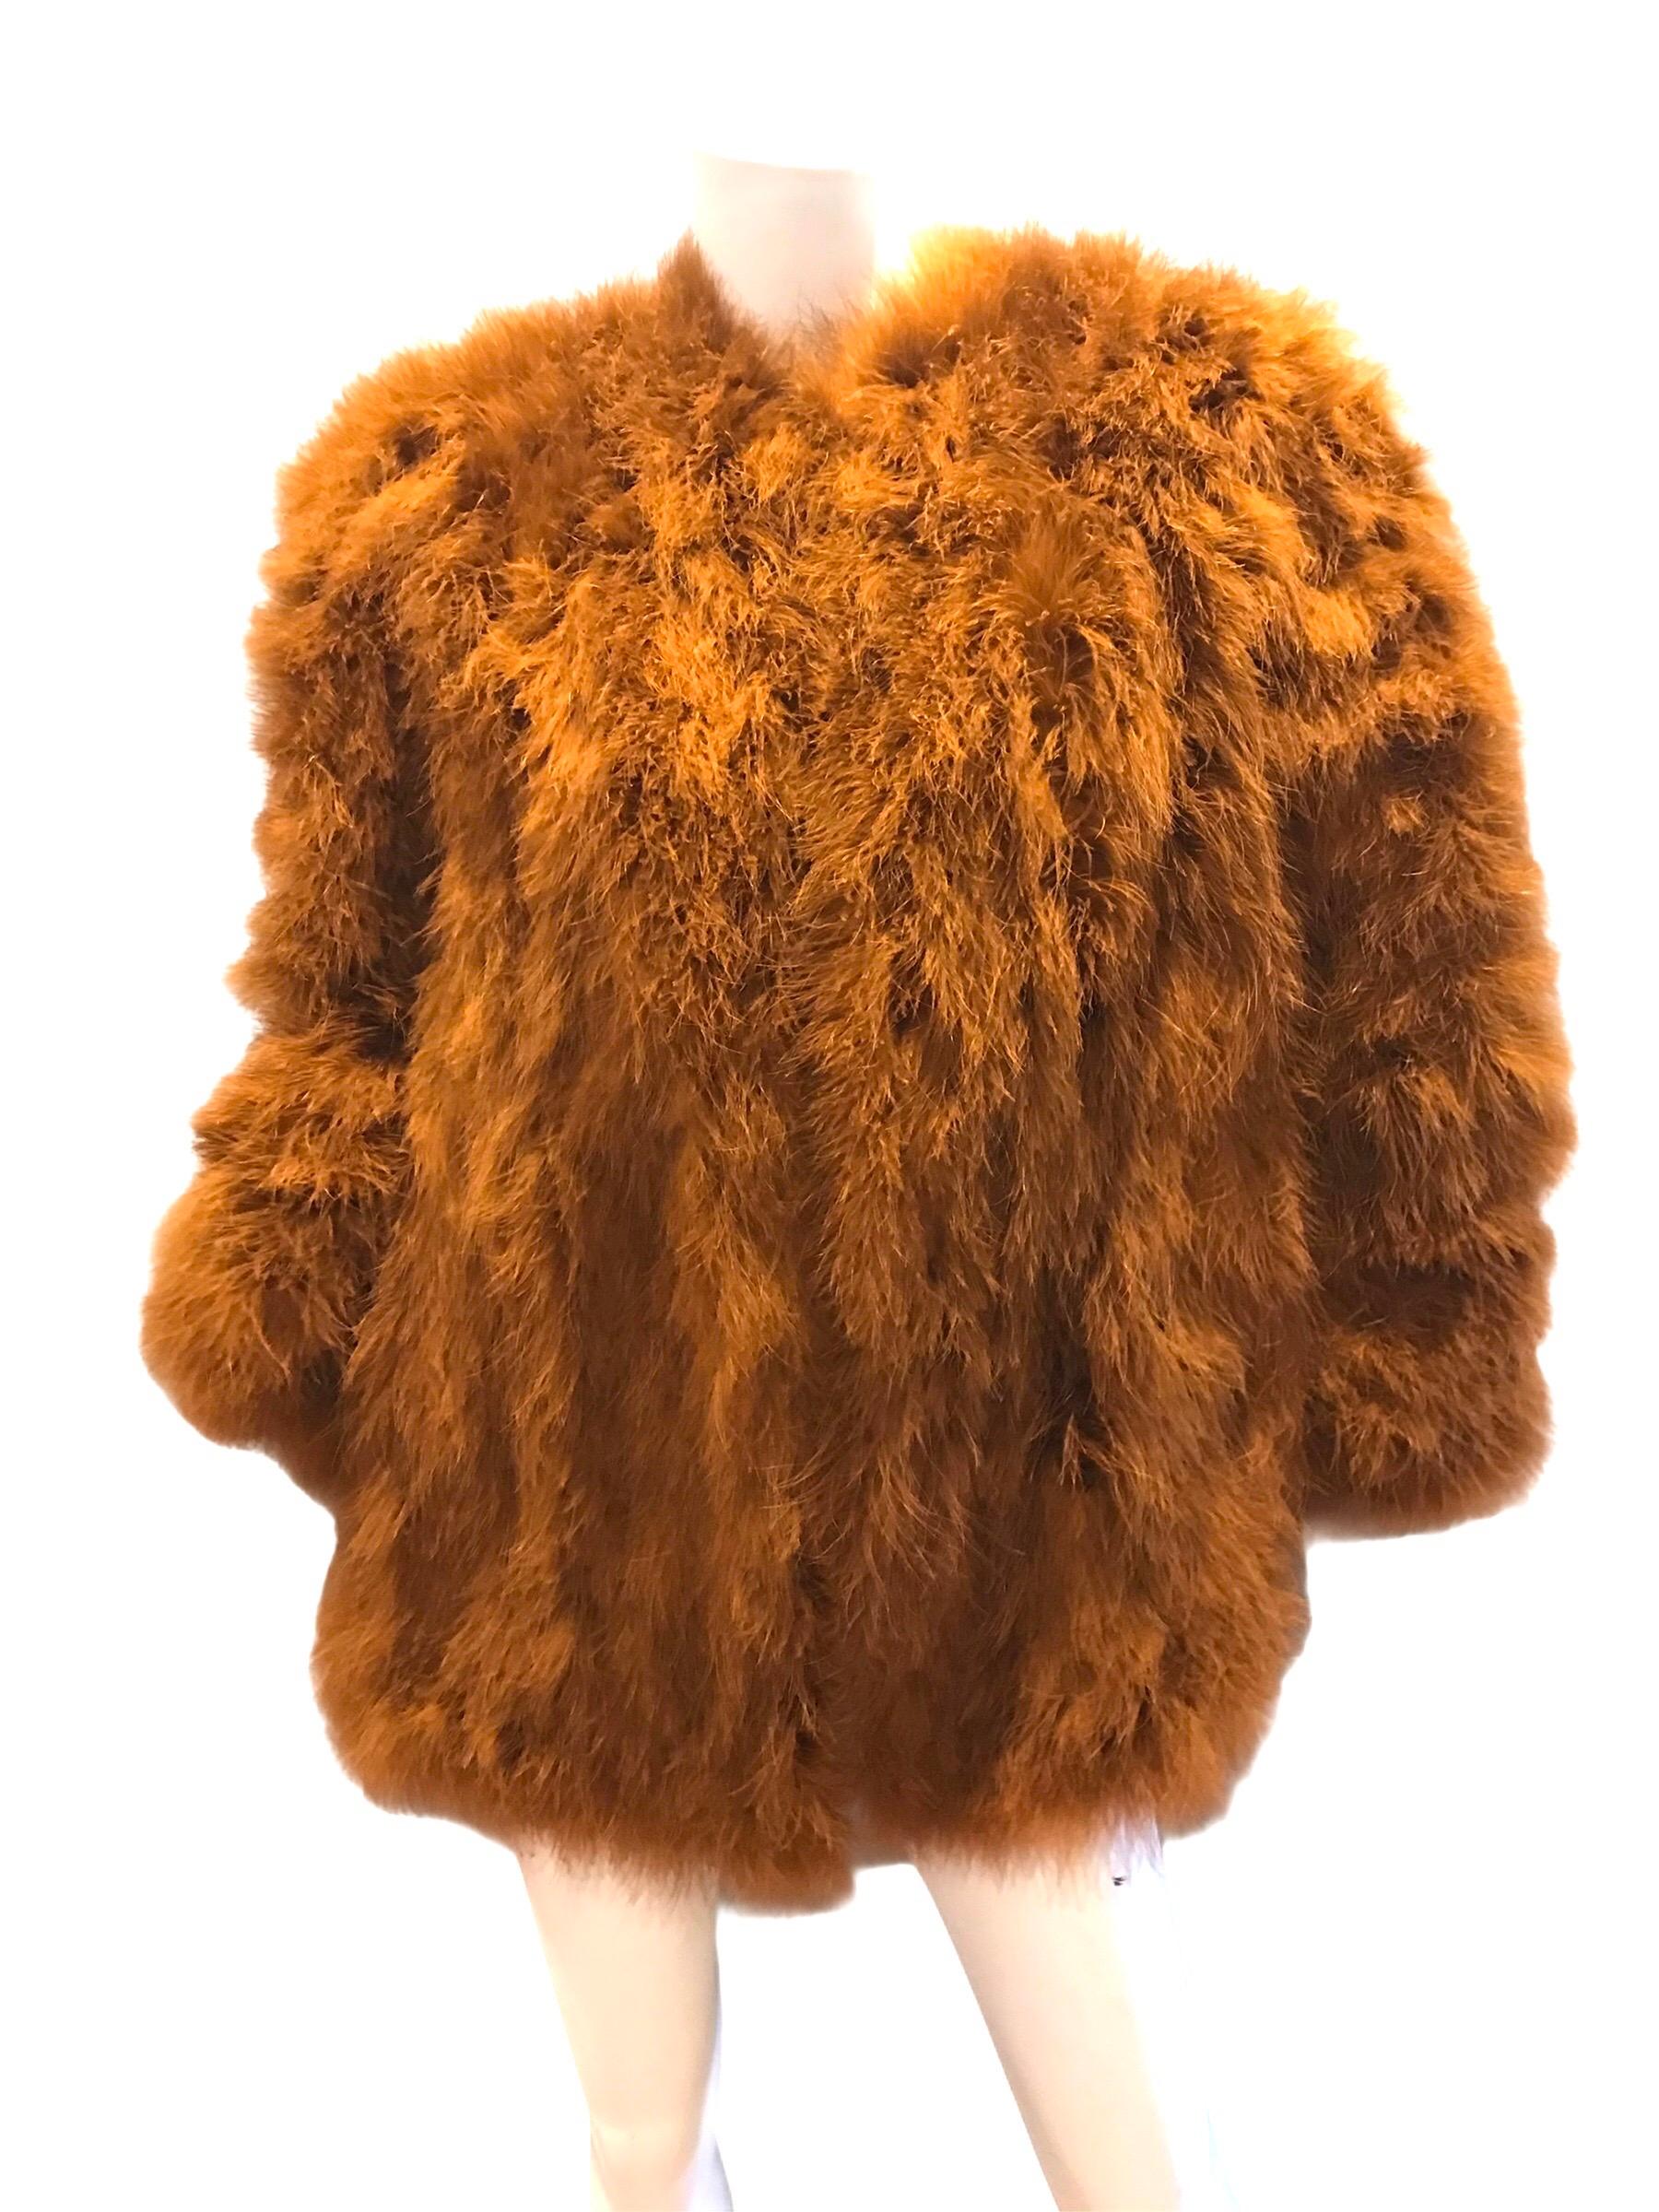 veste à plumes orange surdimensionnée Yves Saint Laurent des années 1980. Deux poches. Fermeture par crochet.
Condition : Excellent
Taille M  - L 
poitrine de 40